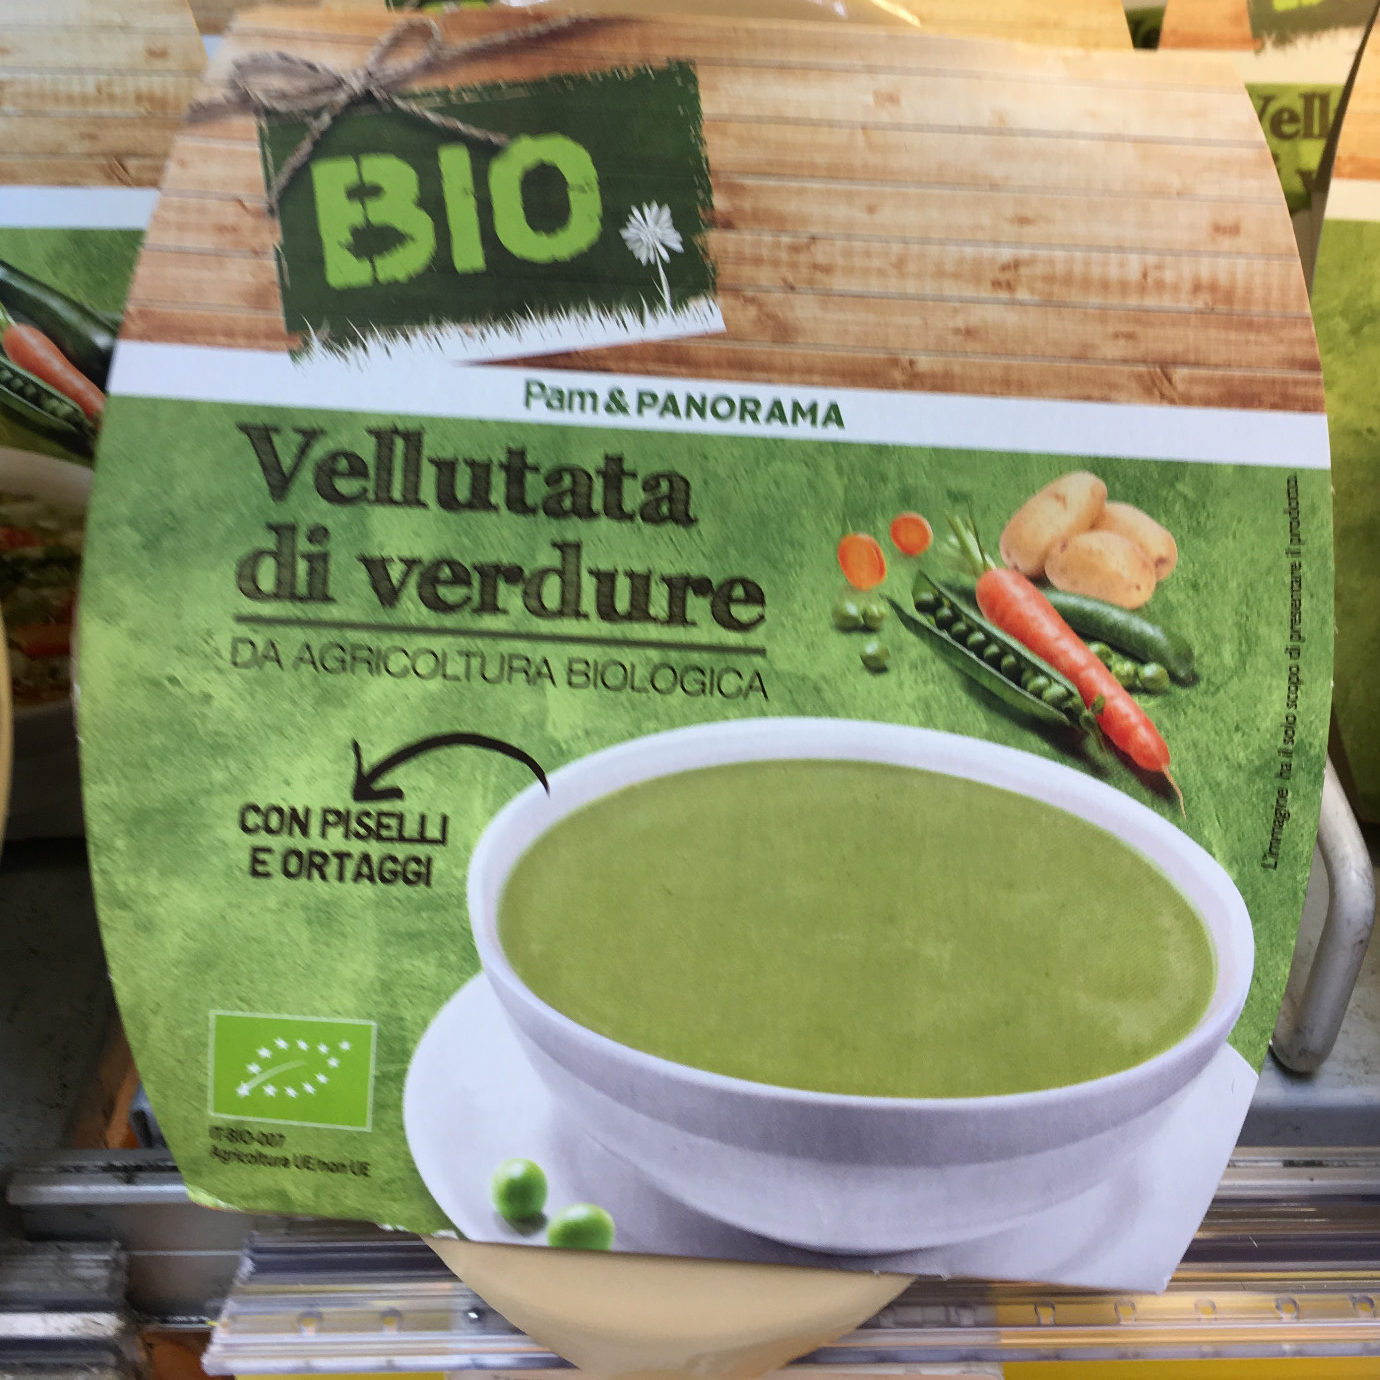 Vellutata di verdure Bio Pam - Product - it